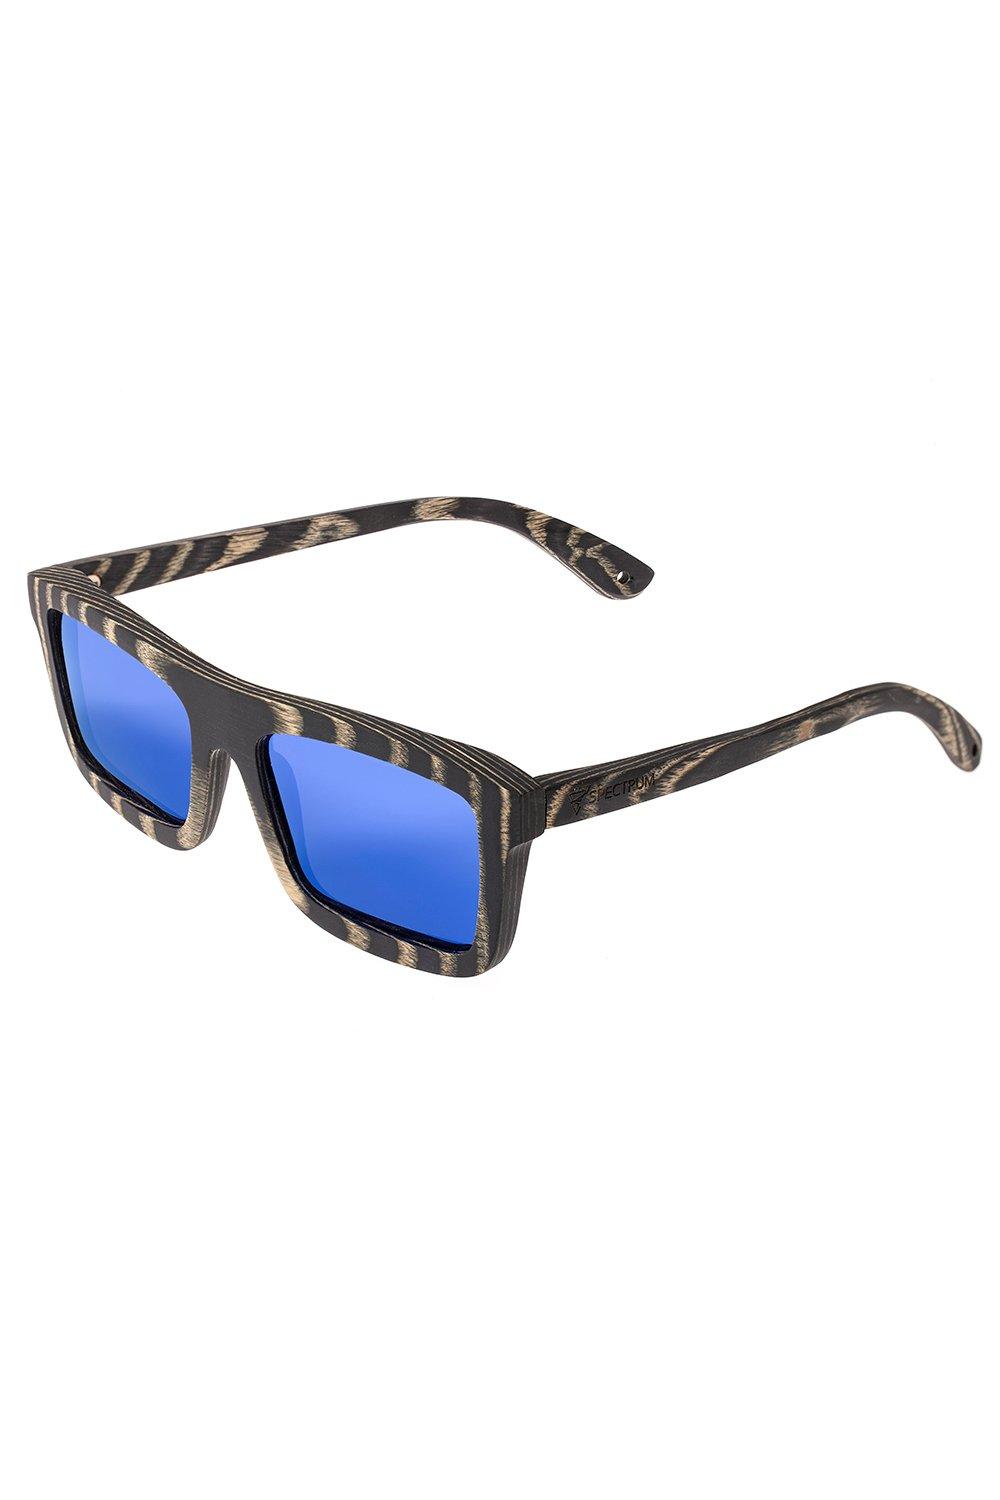 Ward Wood Polarized Sunglasses